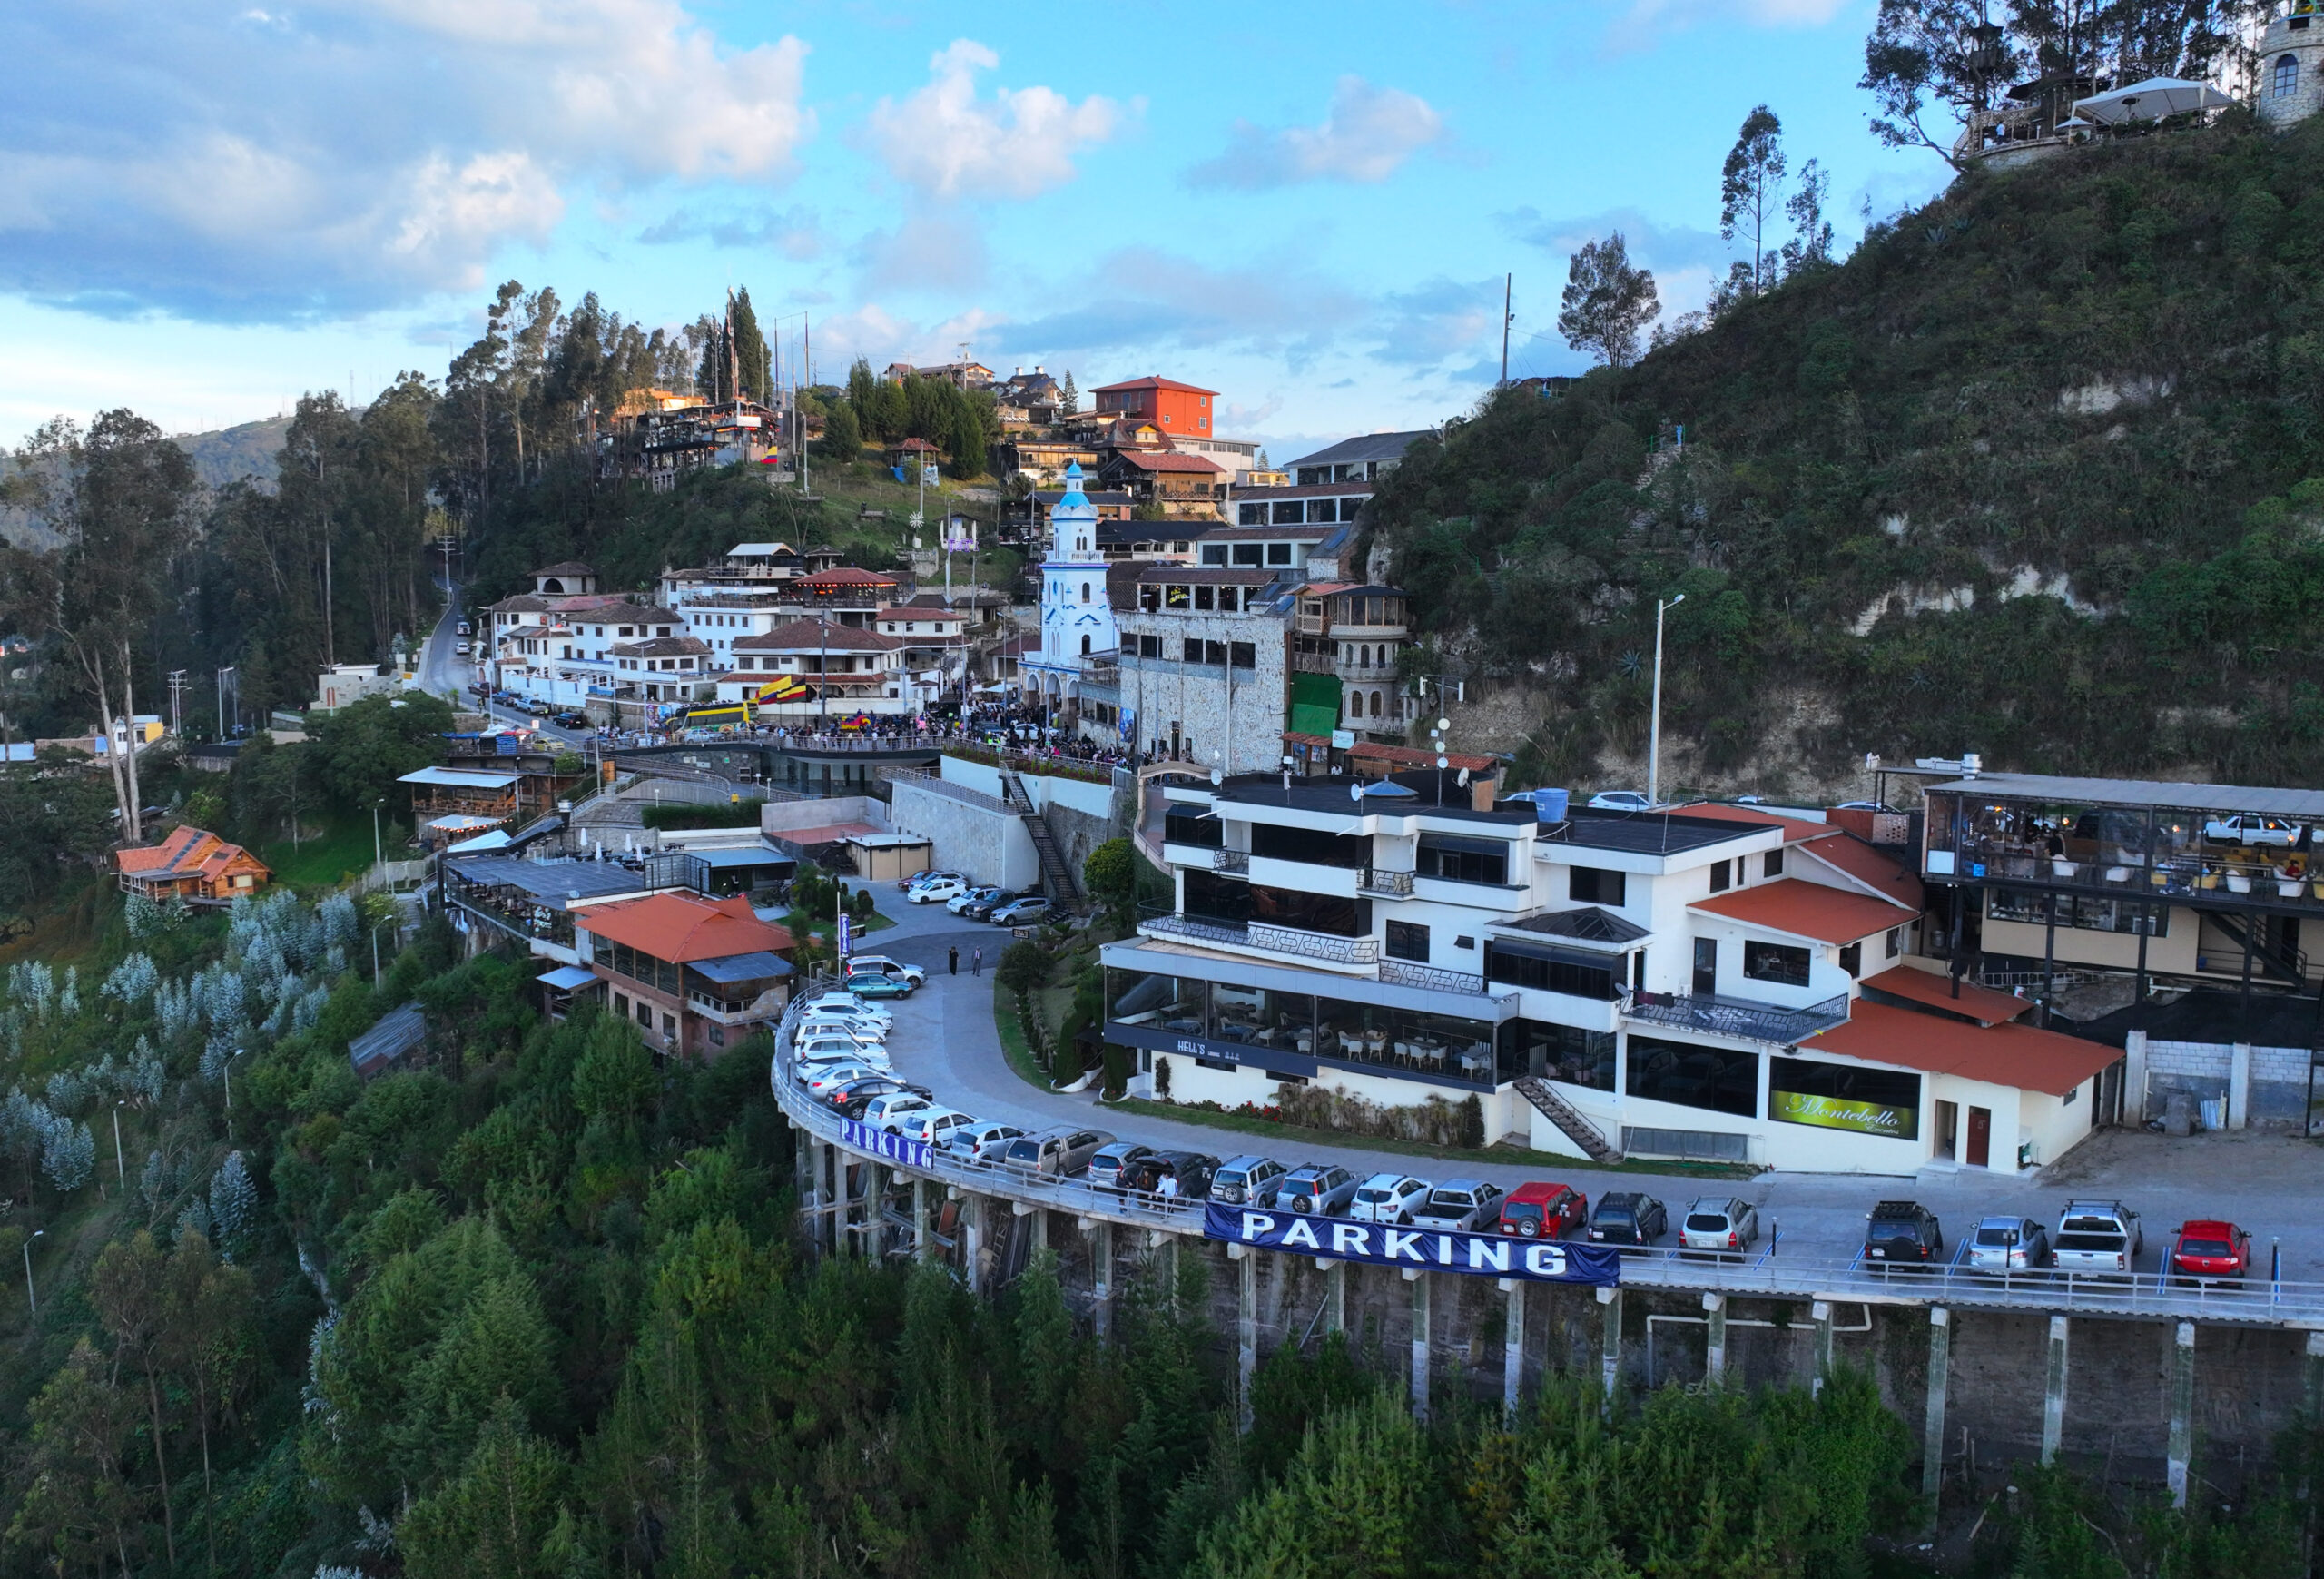 Dueños de negocios de Turi, en Cuenca, han recibido amenazas de extorsionadores que piden dinero a cambio de darles ‘seguridad’. Fotos: El COMERCIO